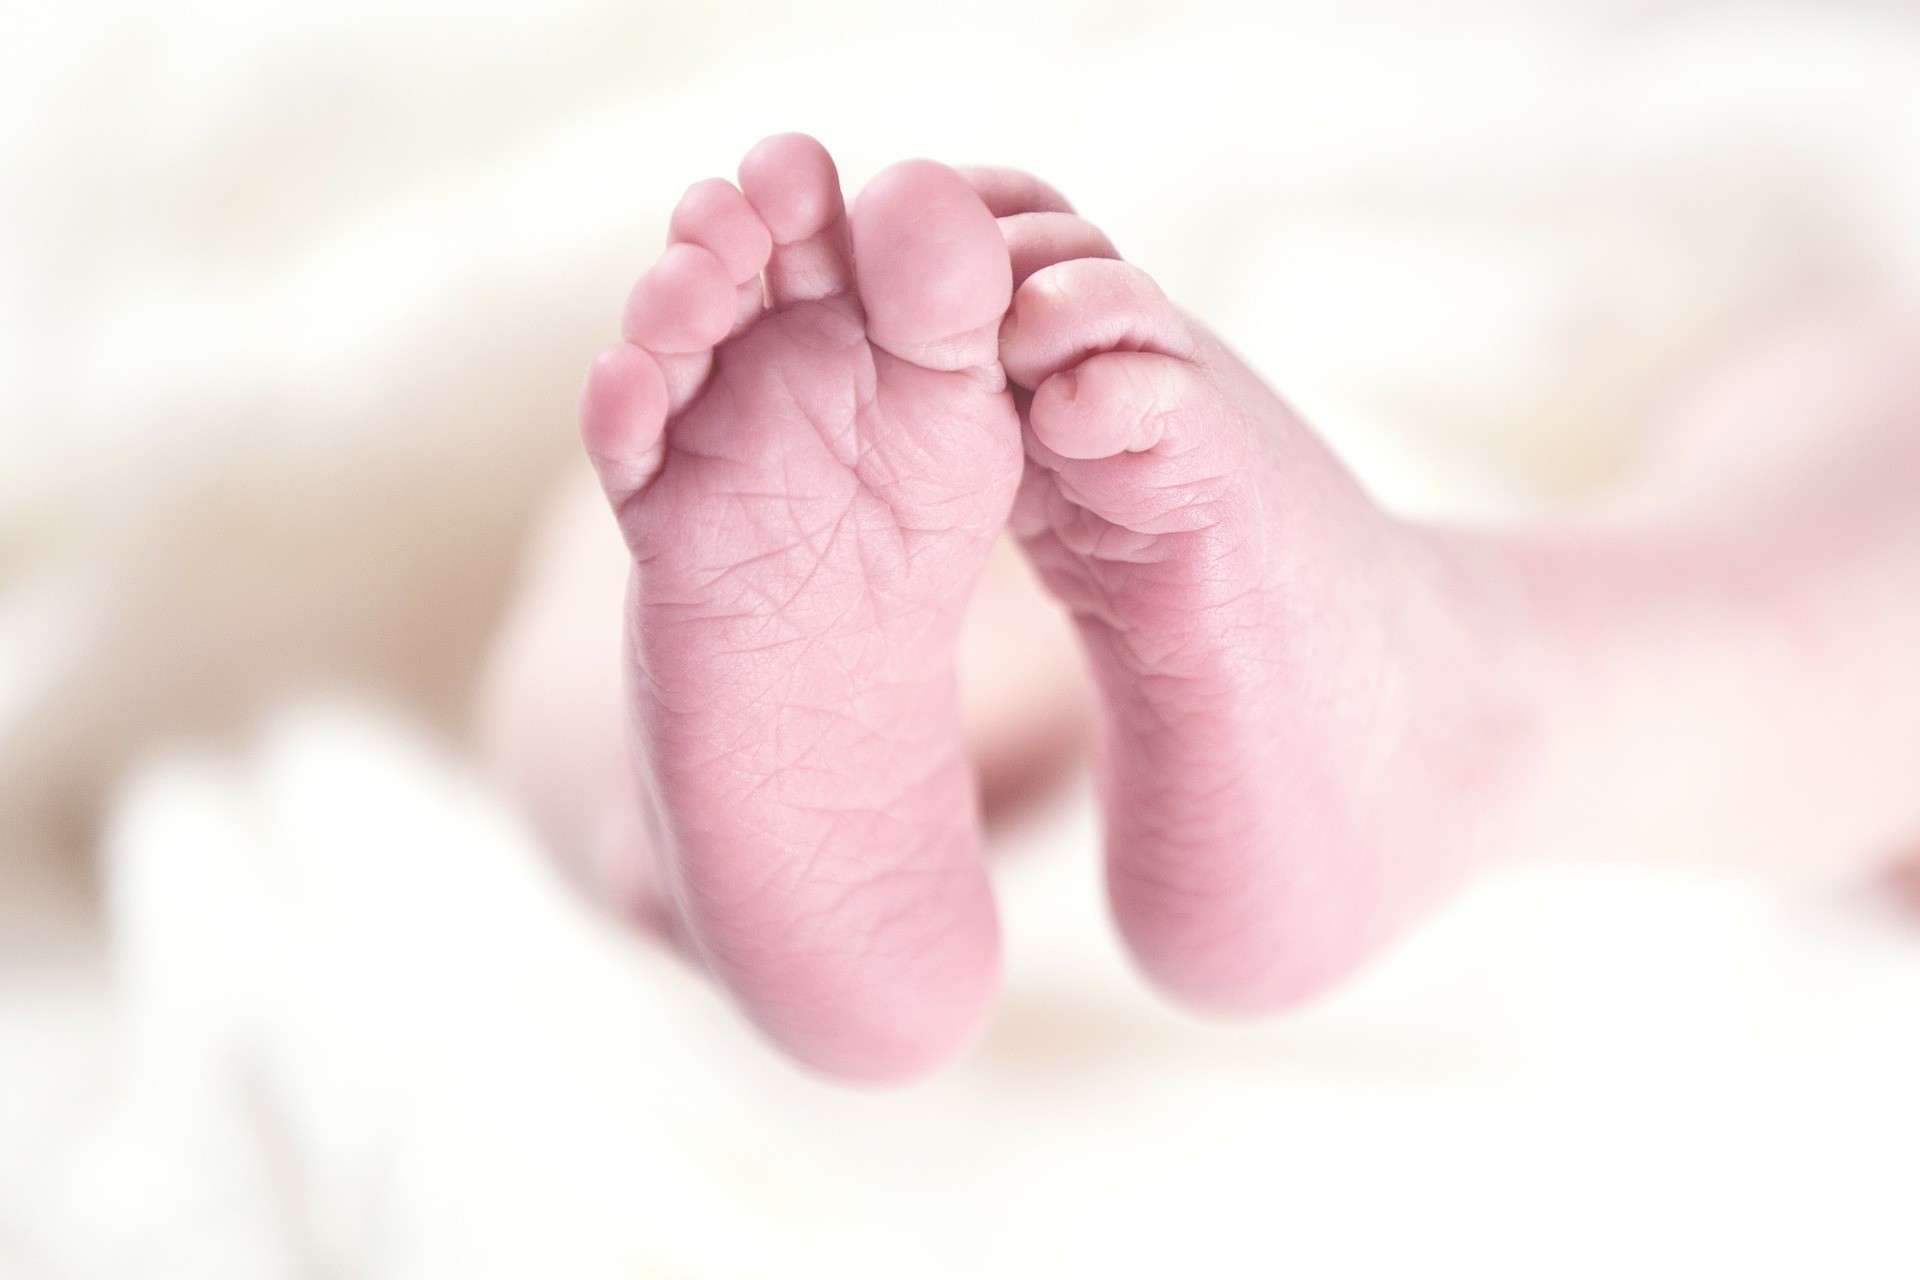 Ano bissexto: 14 bebês nasceram neste 29 de fevereiro em Cuiabá